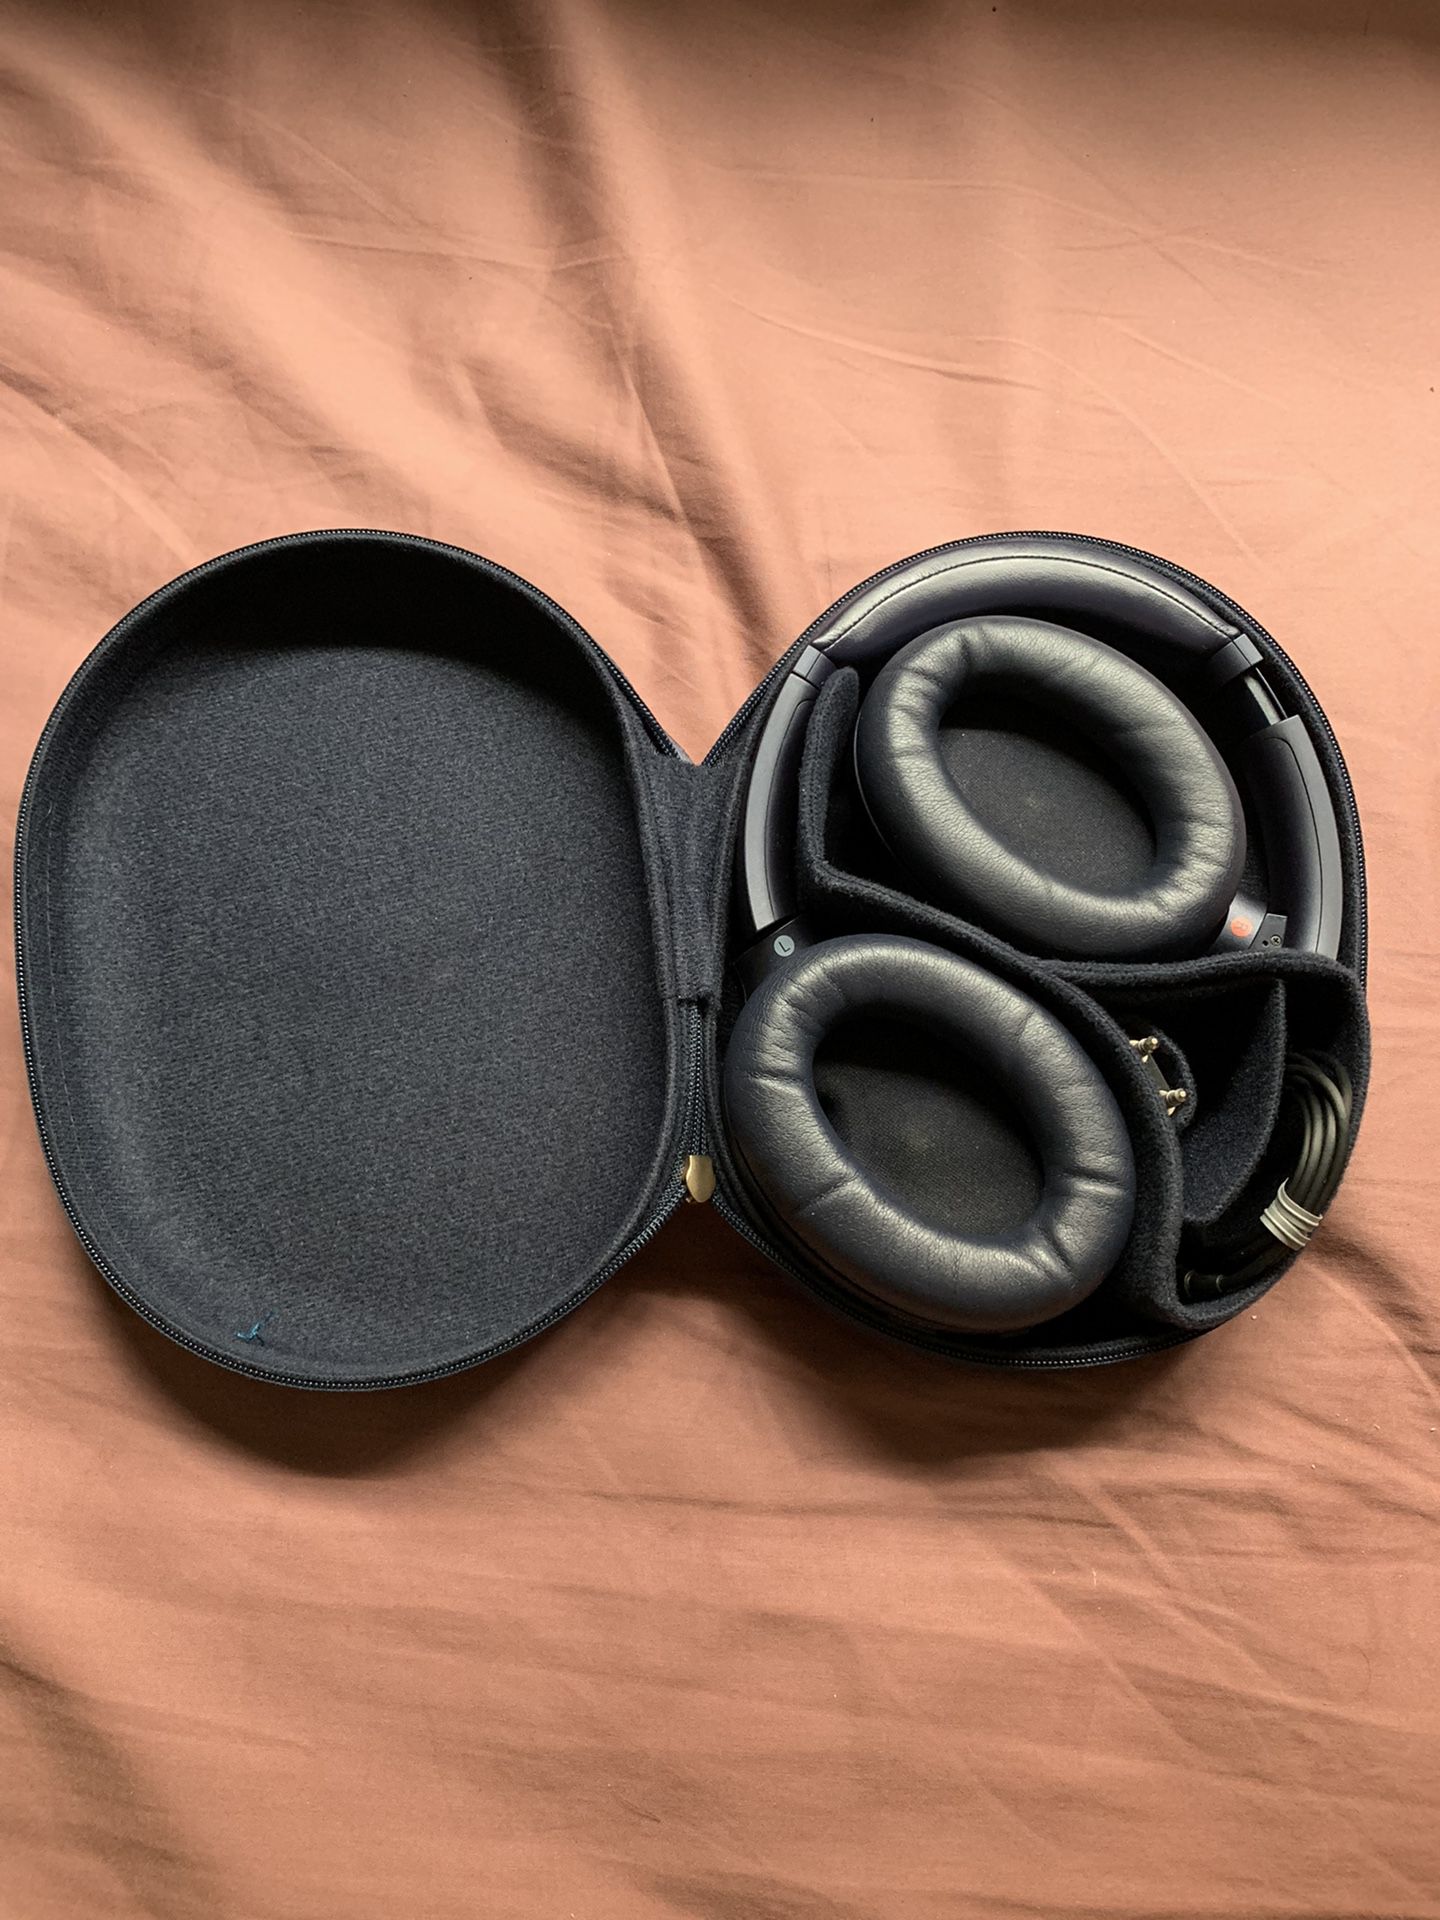 Sony XM4 Noise-Cancelling Headphones 